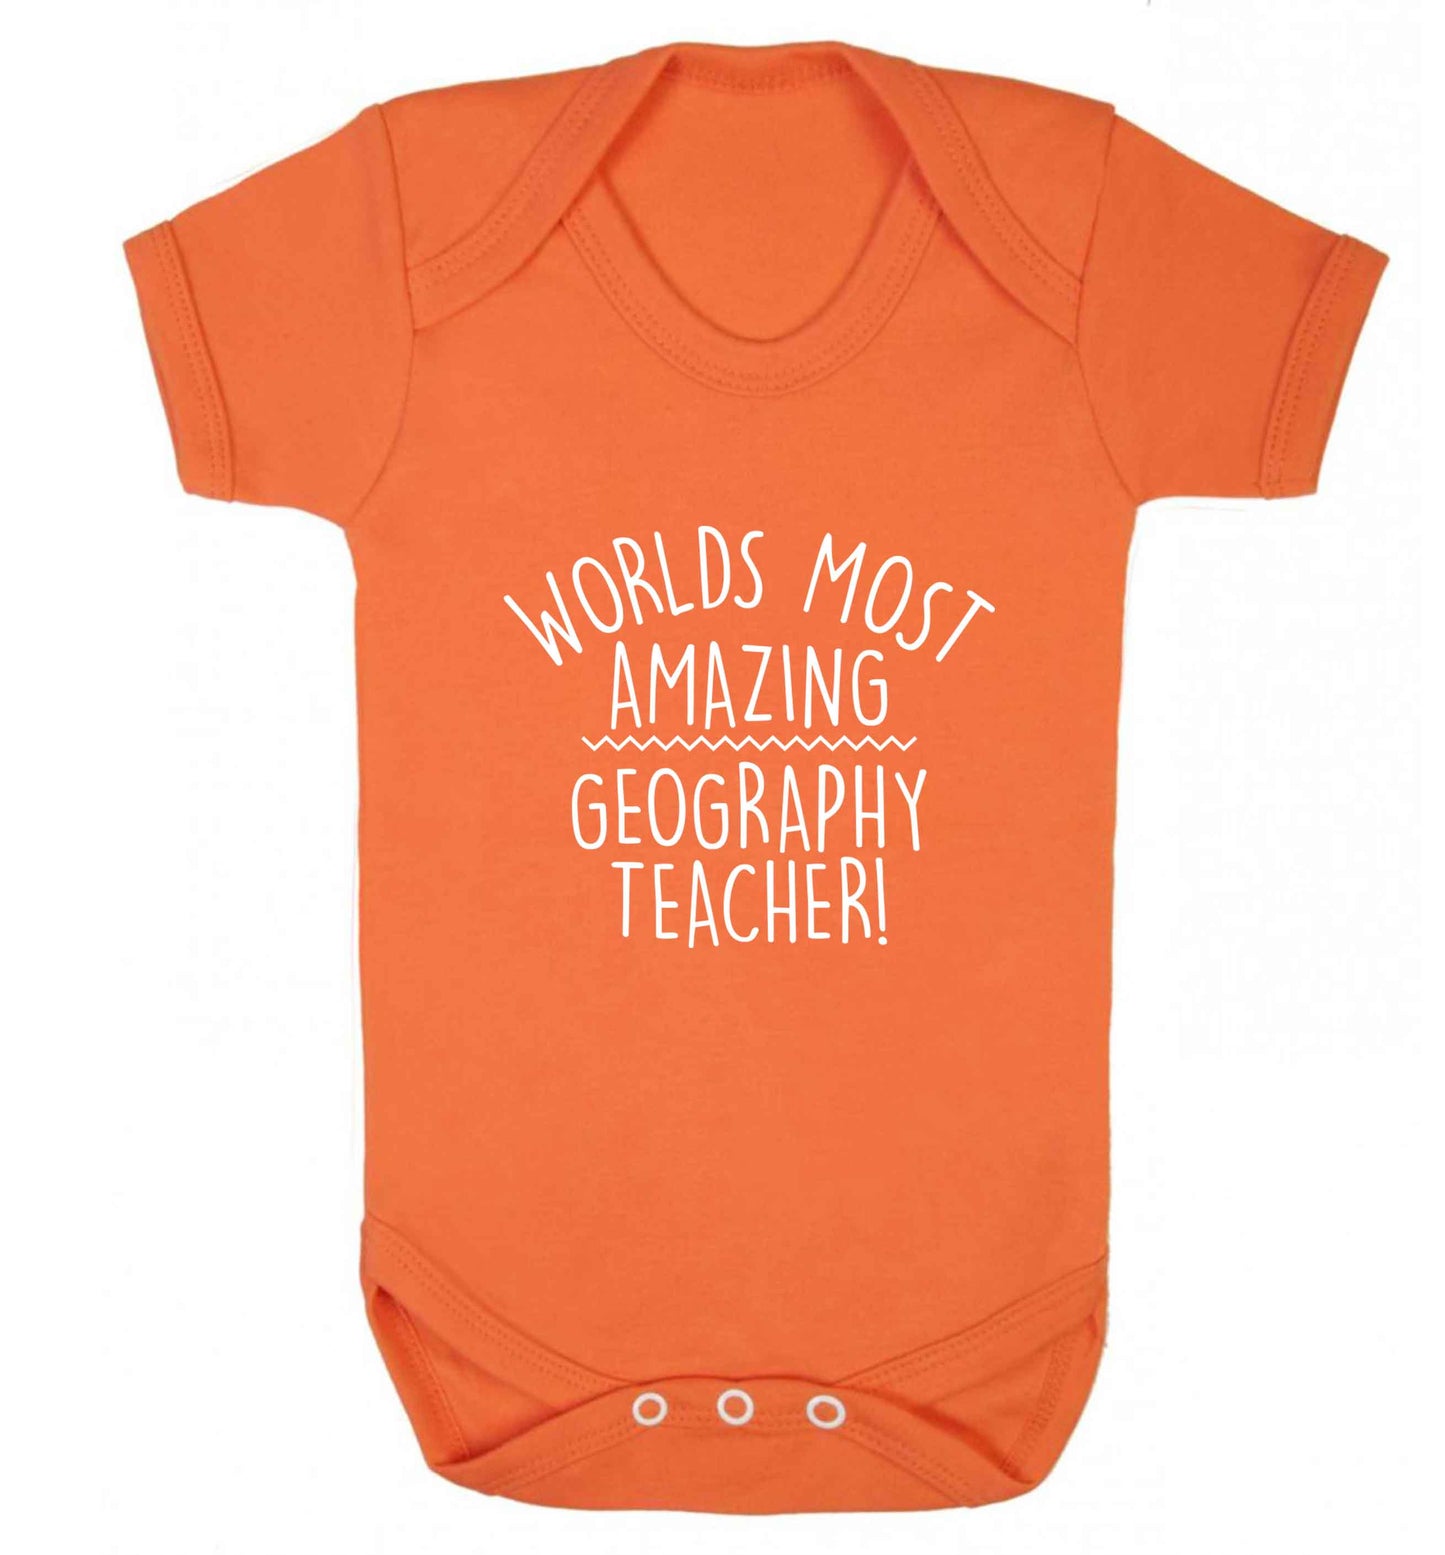 Worlds most amazing geography teacher baby vest orange 18-24 months